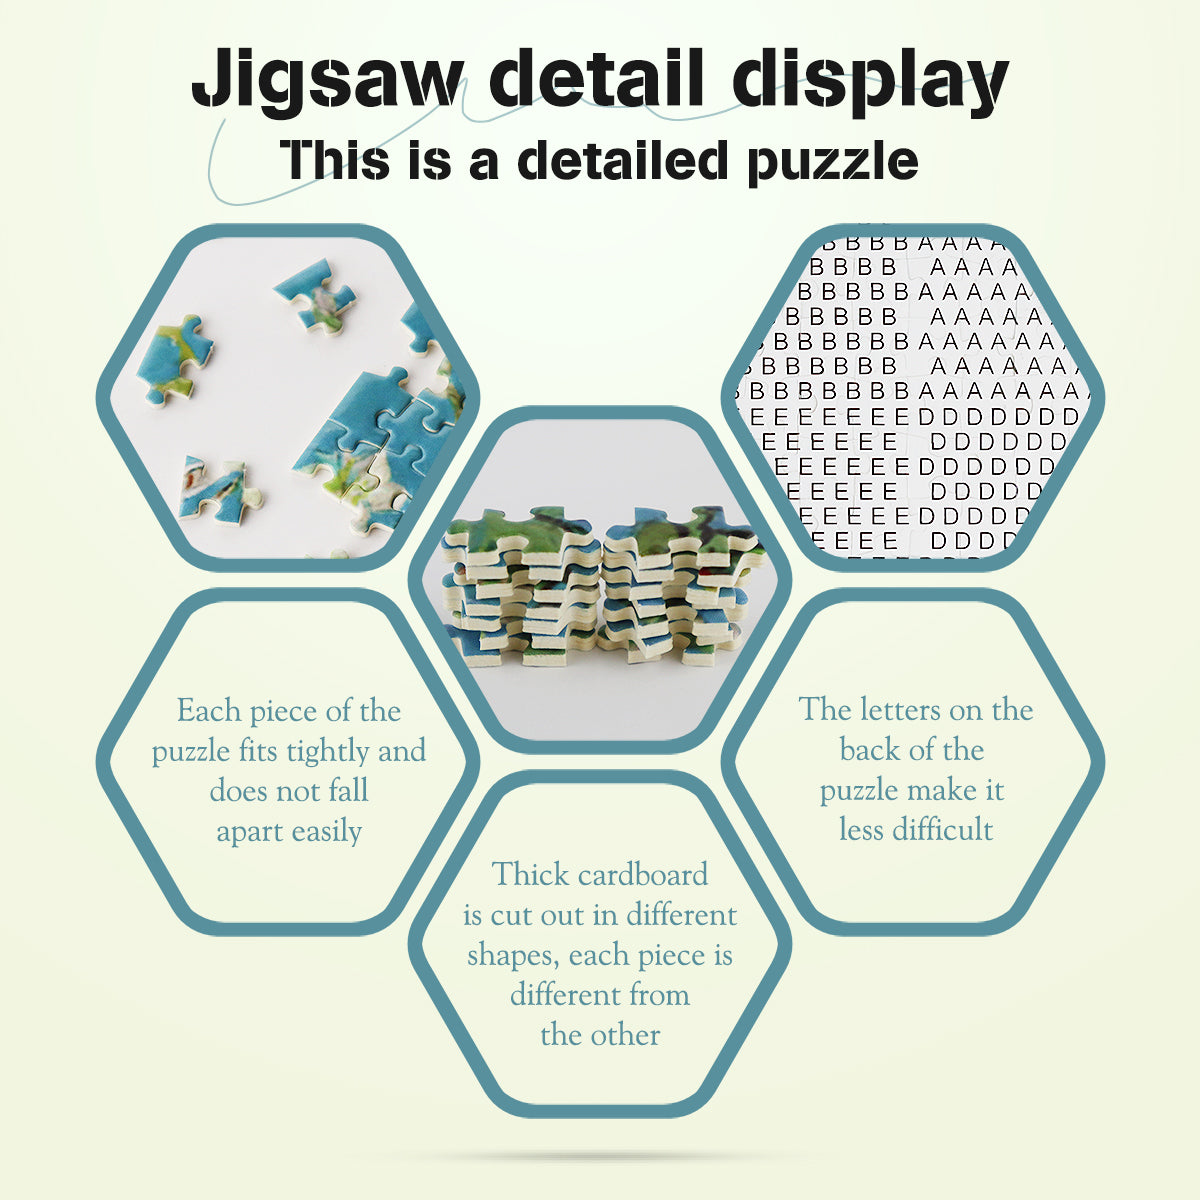 Mini Jigsaw Puzzles 1000 Pieces Monet Oil Painting Puzzle - Almond Blossom - Puzzle Decor 38x26cm